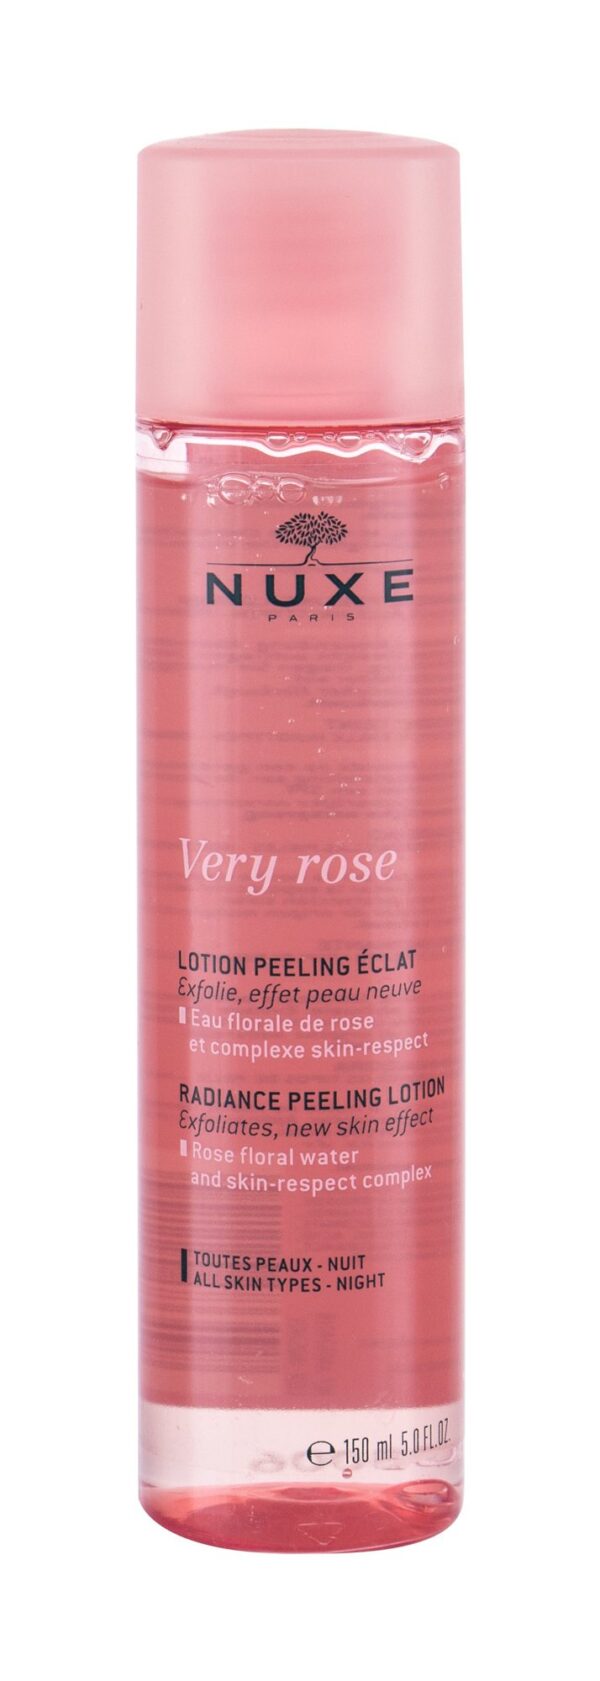 Peeling NUXE Very Rose